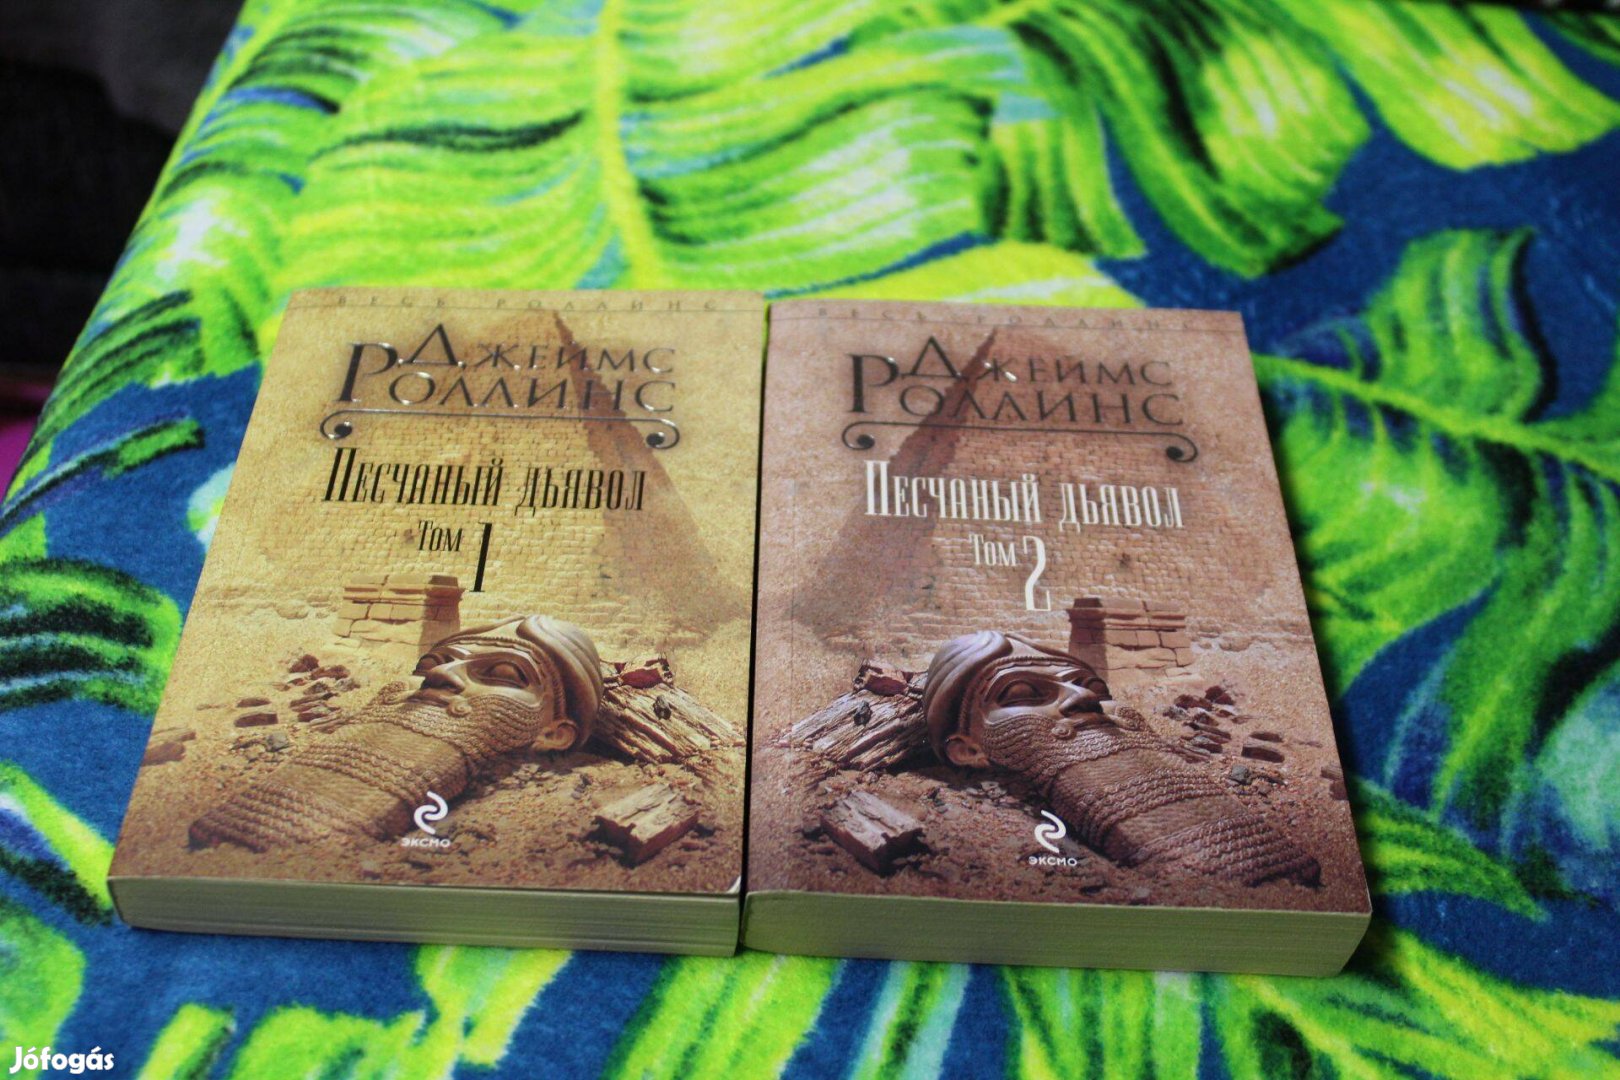 James Rollins regeny orosz nyelven, Homokvihar (2 kotet egyben elado)